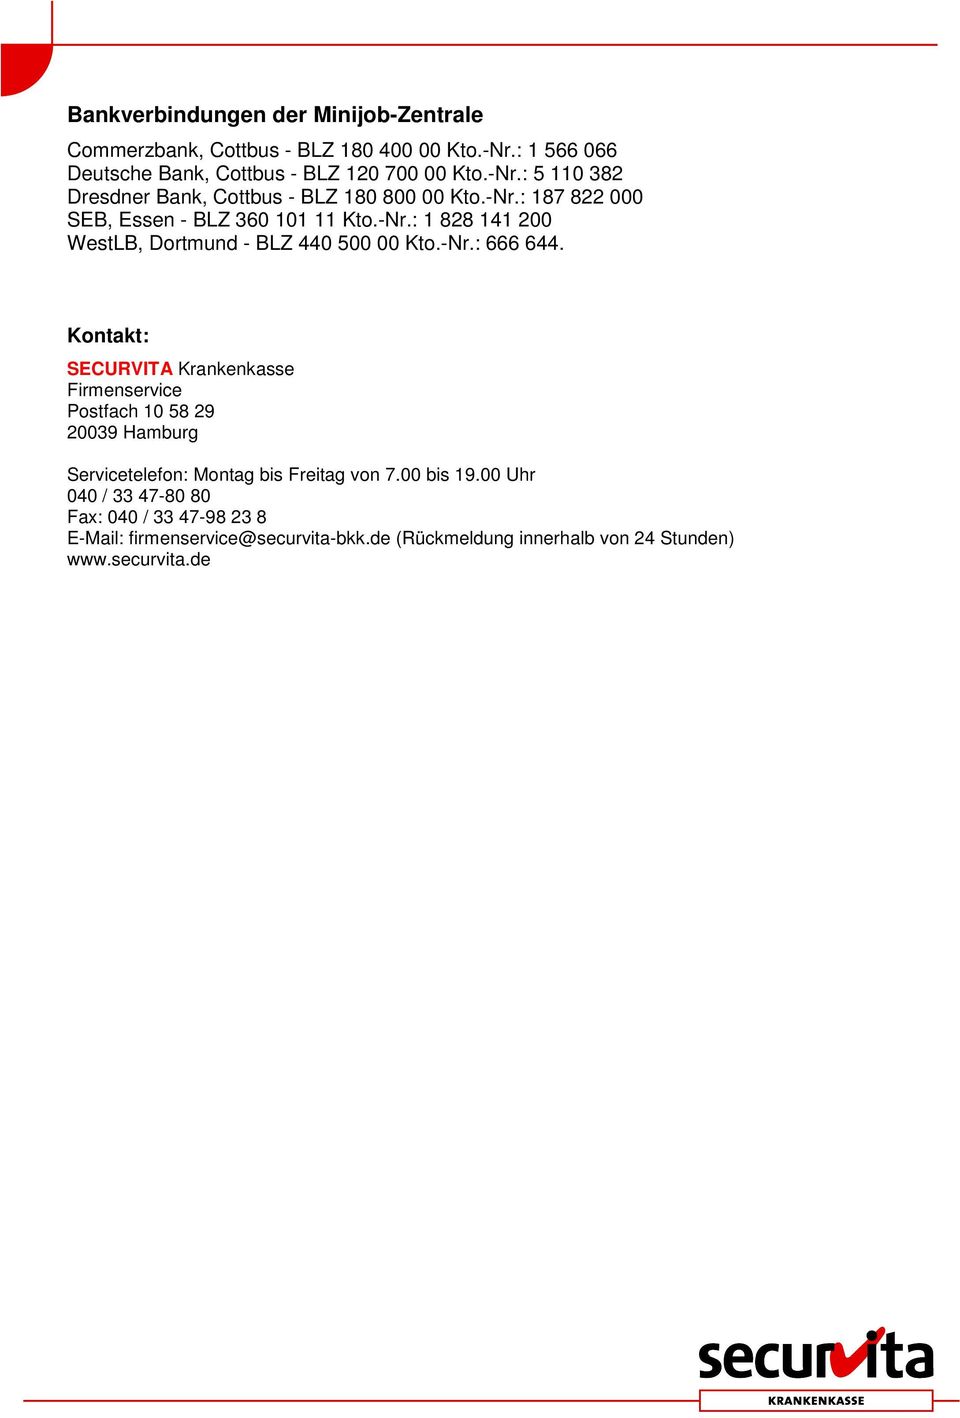 Kontakt: SECURVITA Krankenkasse Firmenservice Postfach 10 58 29 20039 Hamburg Servicetelefon: Montag bis Freitag von 7.00 bis 19.